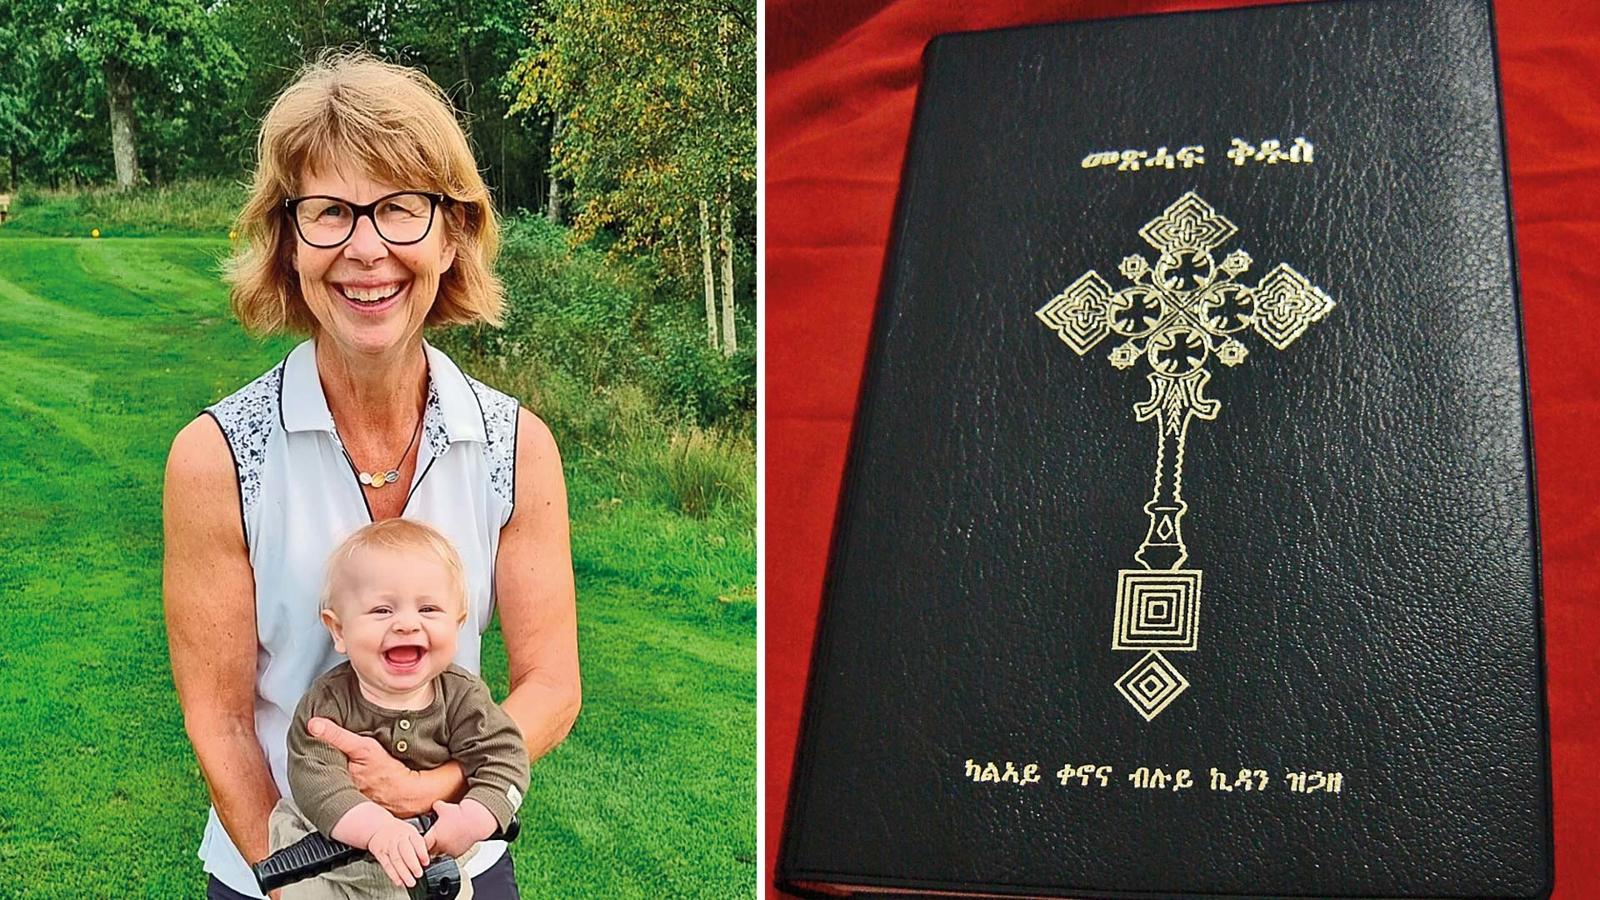 Simon Arvidssons mamma till vänster med ett litet barn i famnen. Till höger en eritriansk bibel.